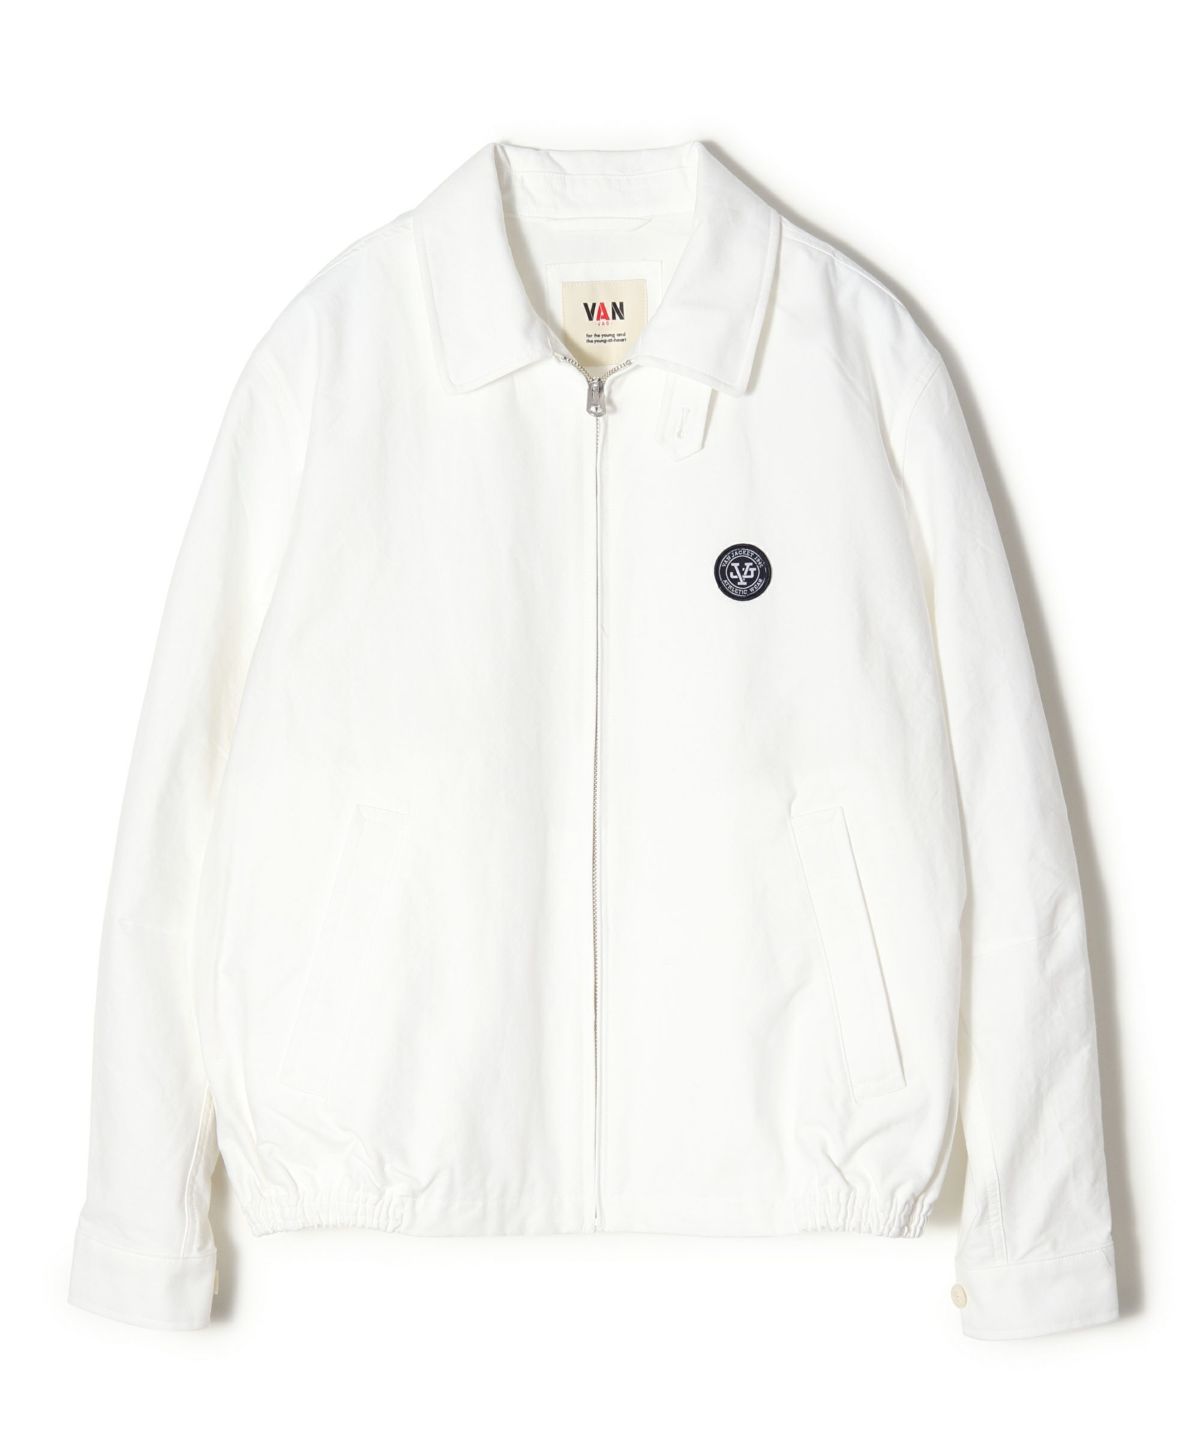 スプリングフェア 【新品・別注品】VAN Jacket JACKET 3面ロゴ 中綿